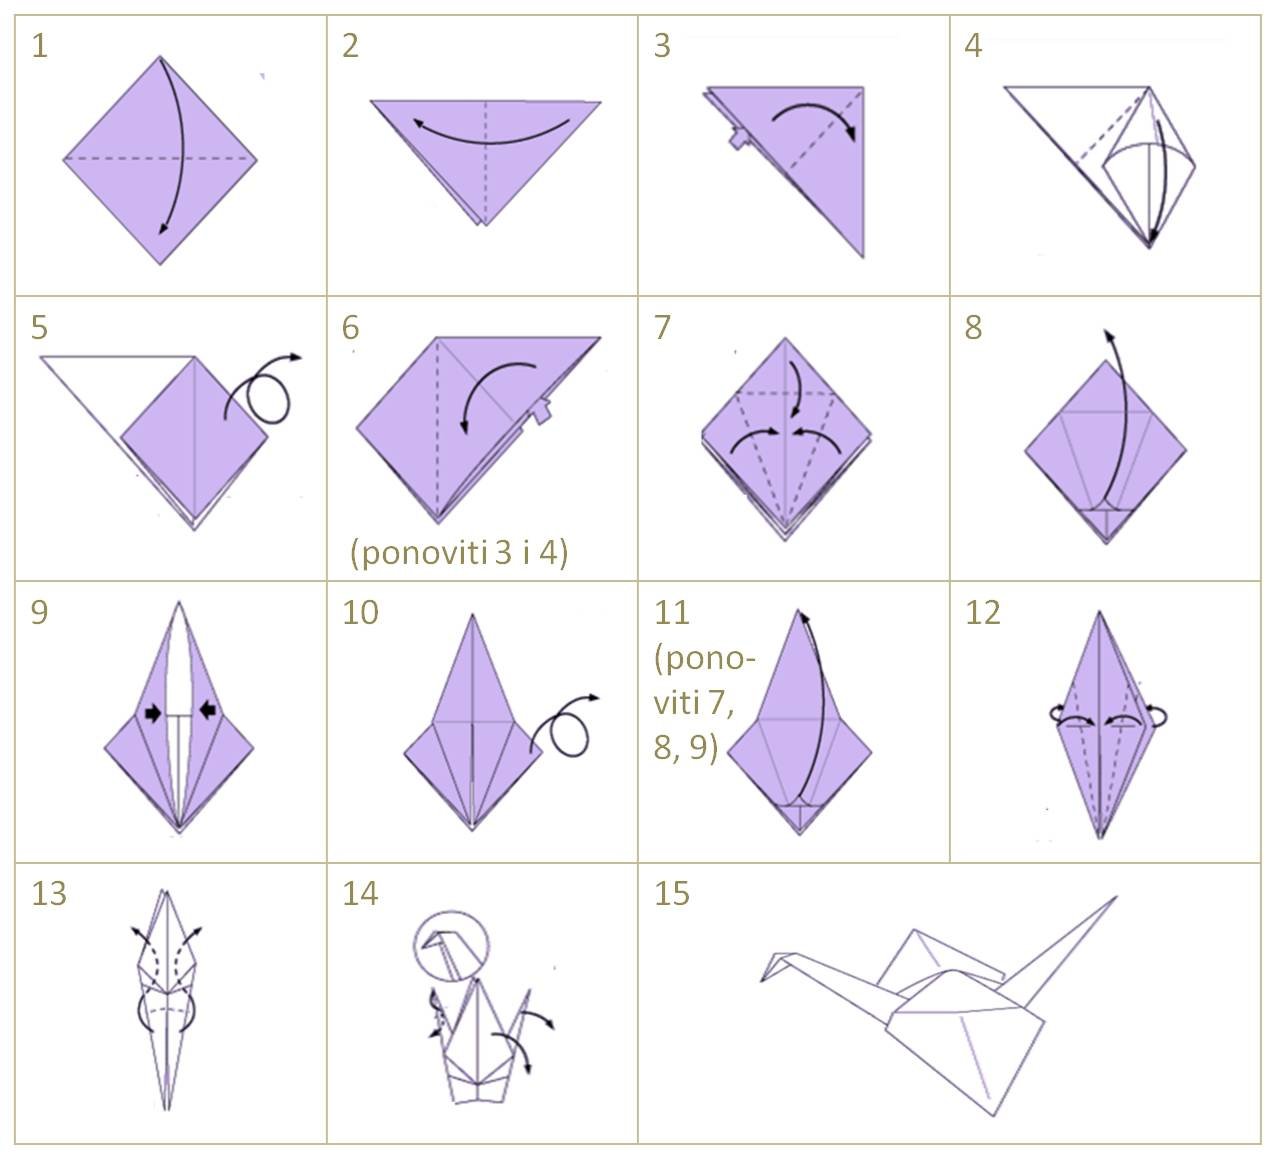 Оригами журавлик простой способ. Как делать журавликов из бумаги. Как складывать журавлика из бумаги. Схема оригами Журавлик из бумаги. Как сложить журавлика из бумаги поэтапно.